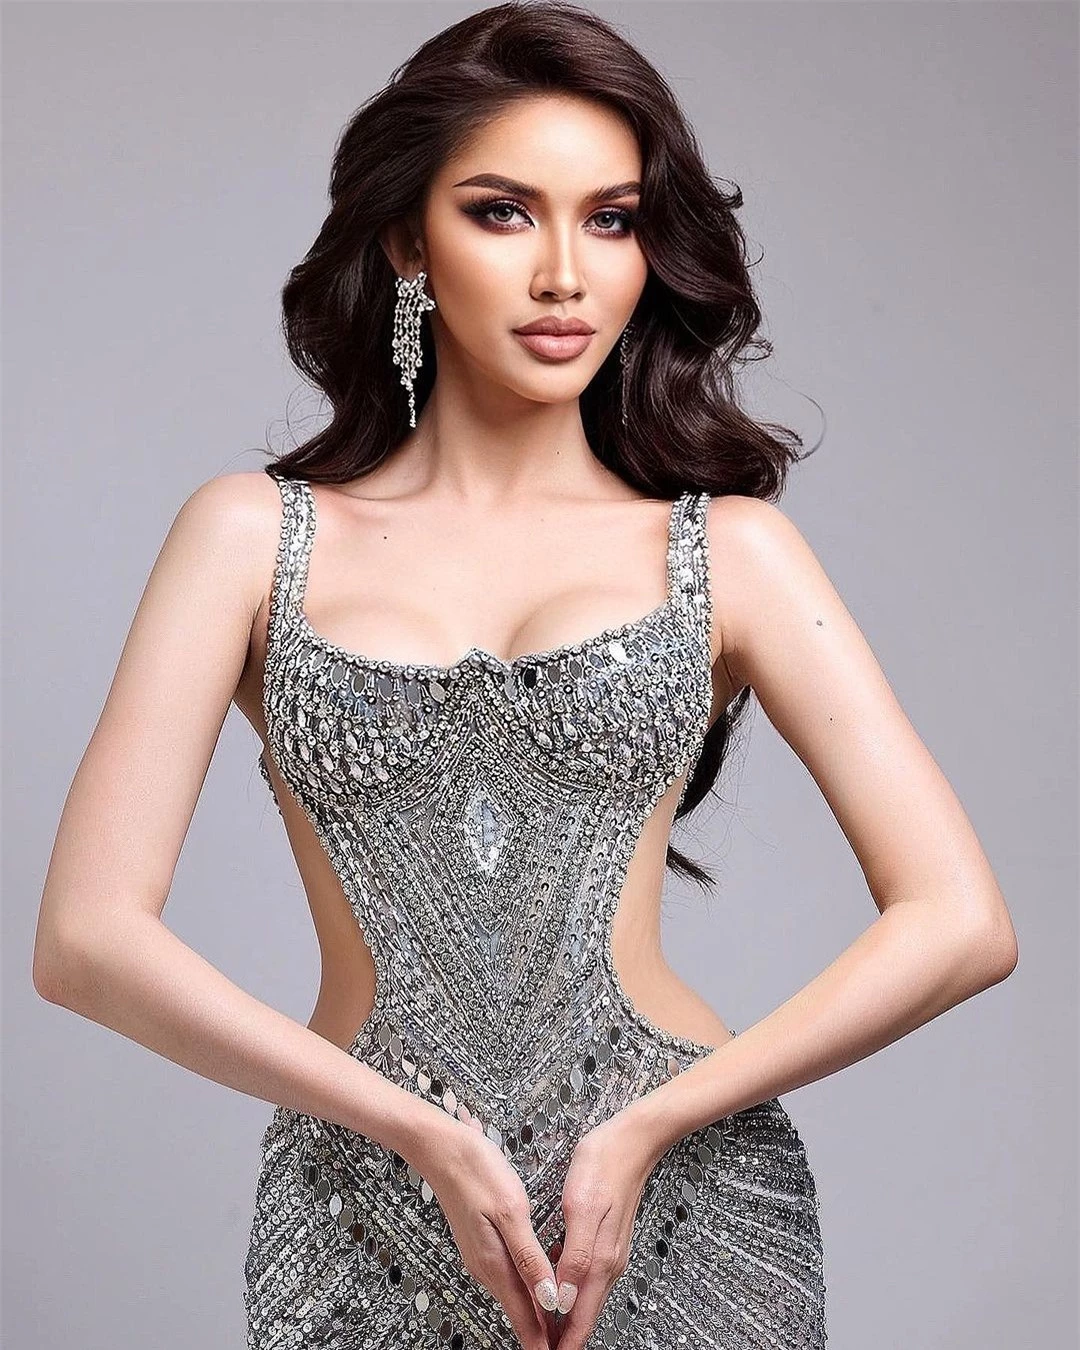 Nhan sắc người đẹp chuyển giới giành ngôi Á hậu Hoàn vũ Campuchia ảnh 6